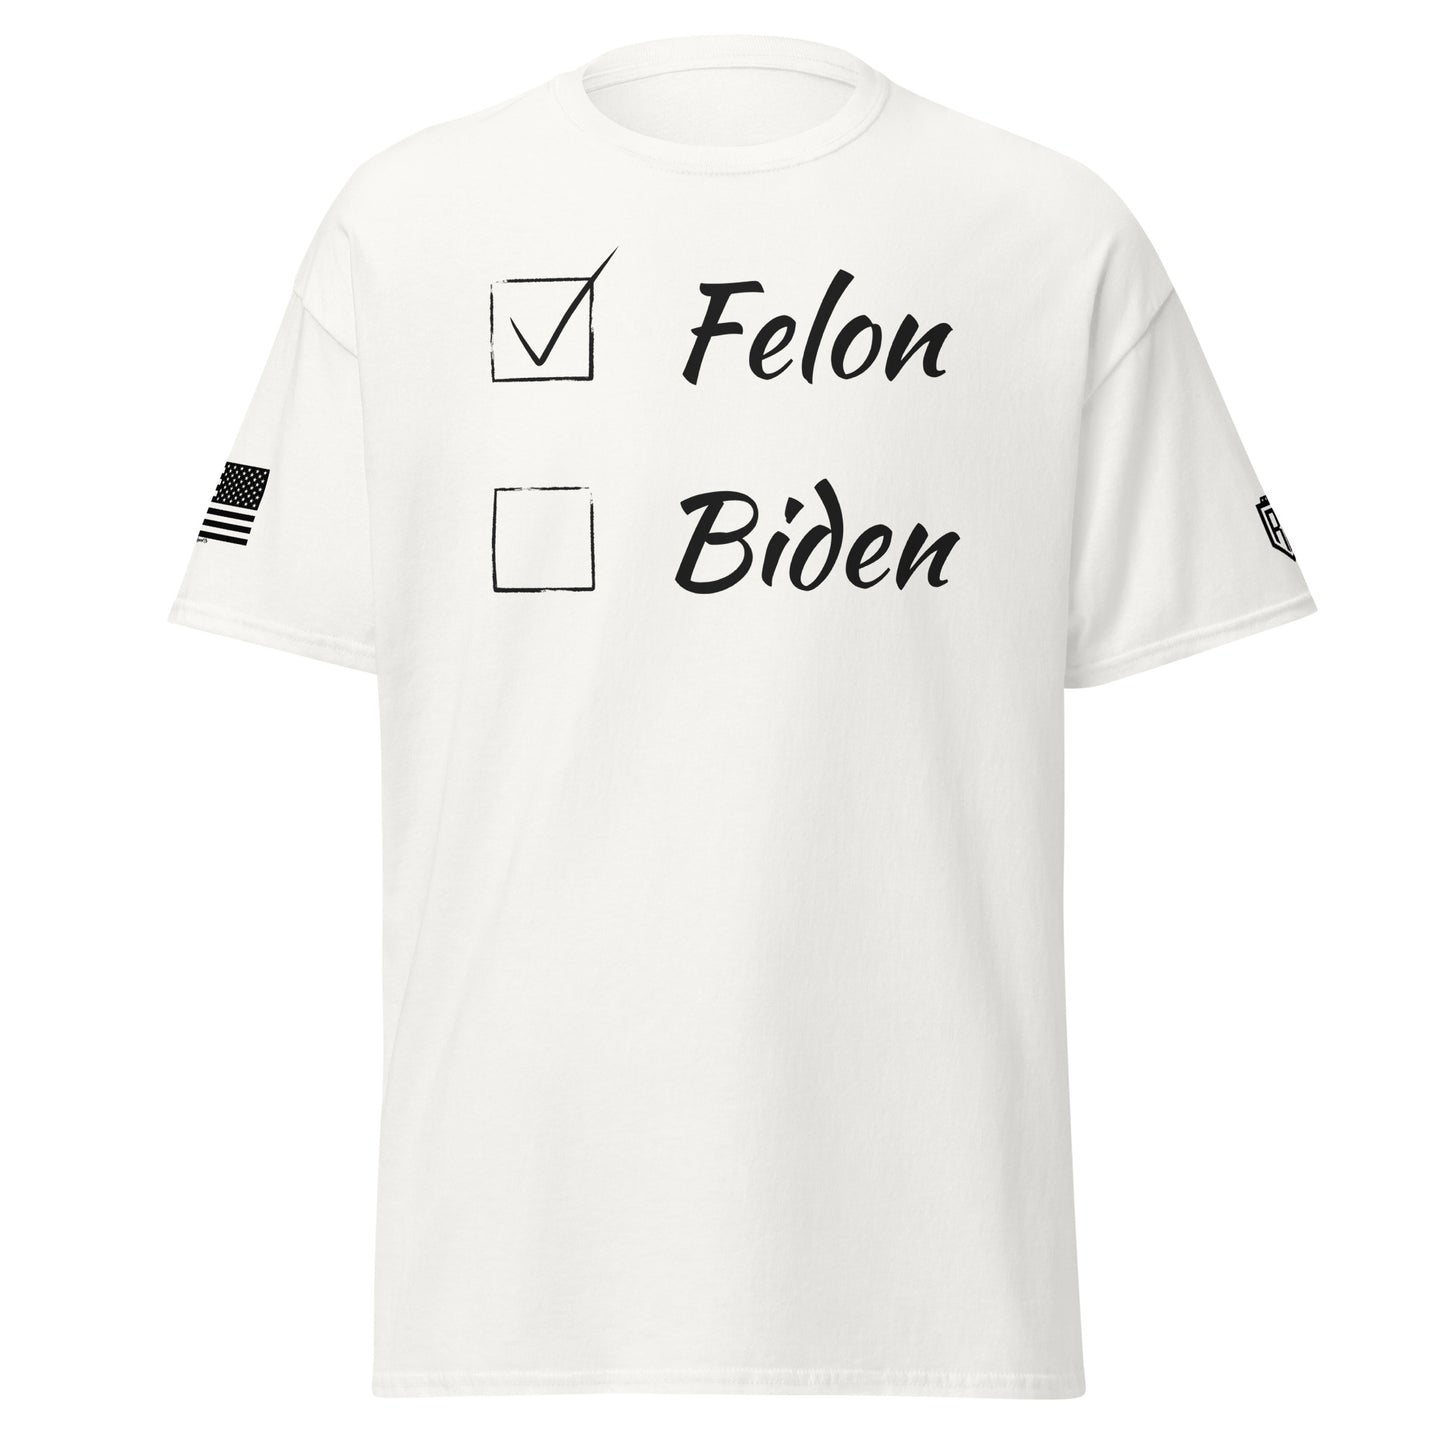 Vote for Felon or Biden T-Shirt